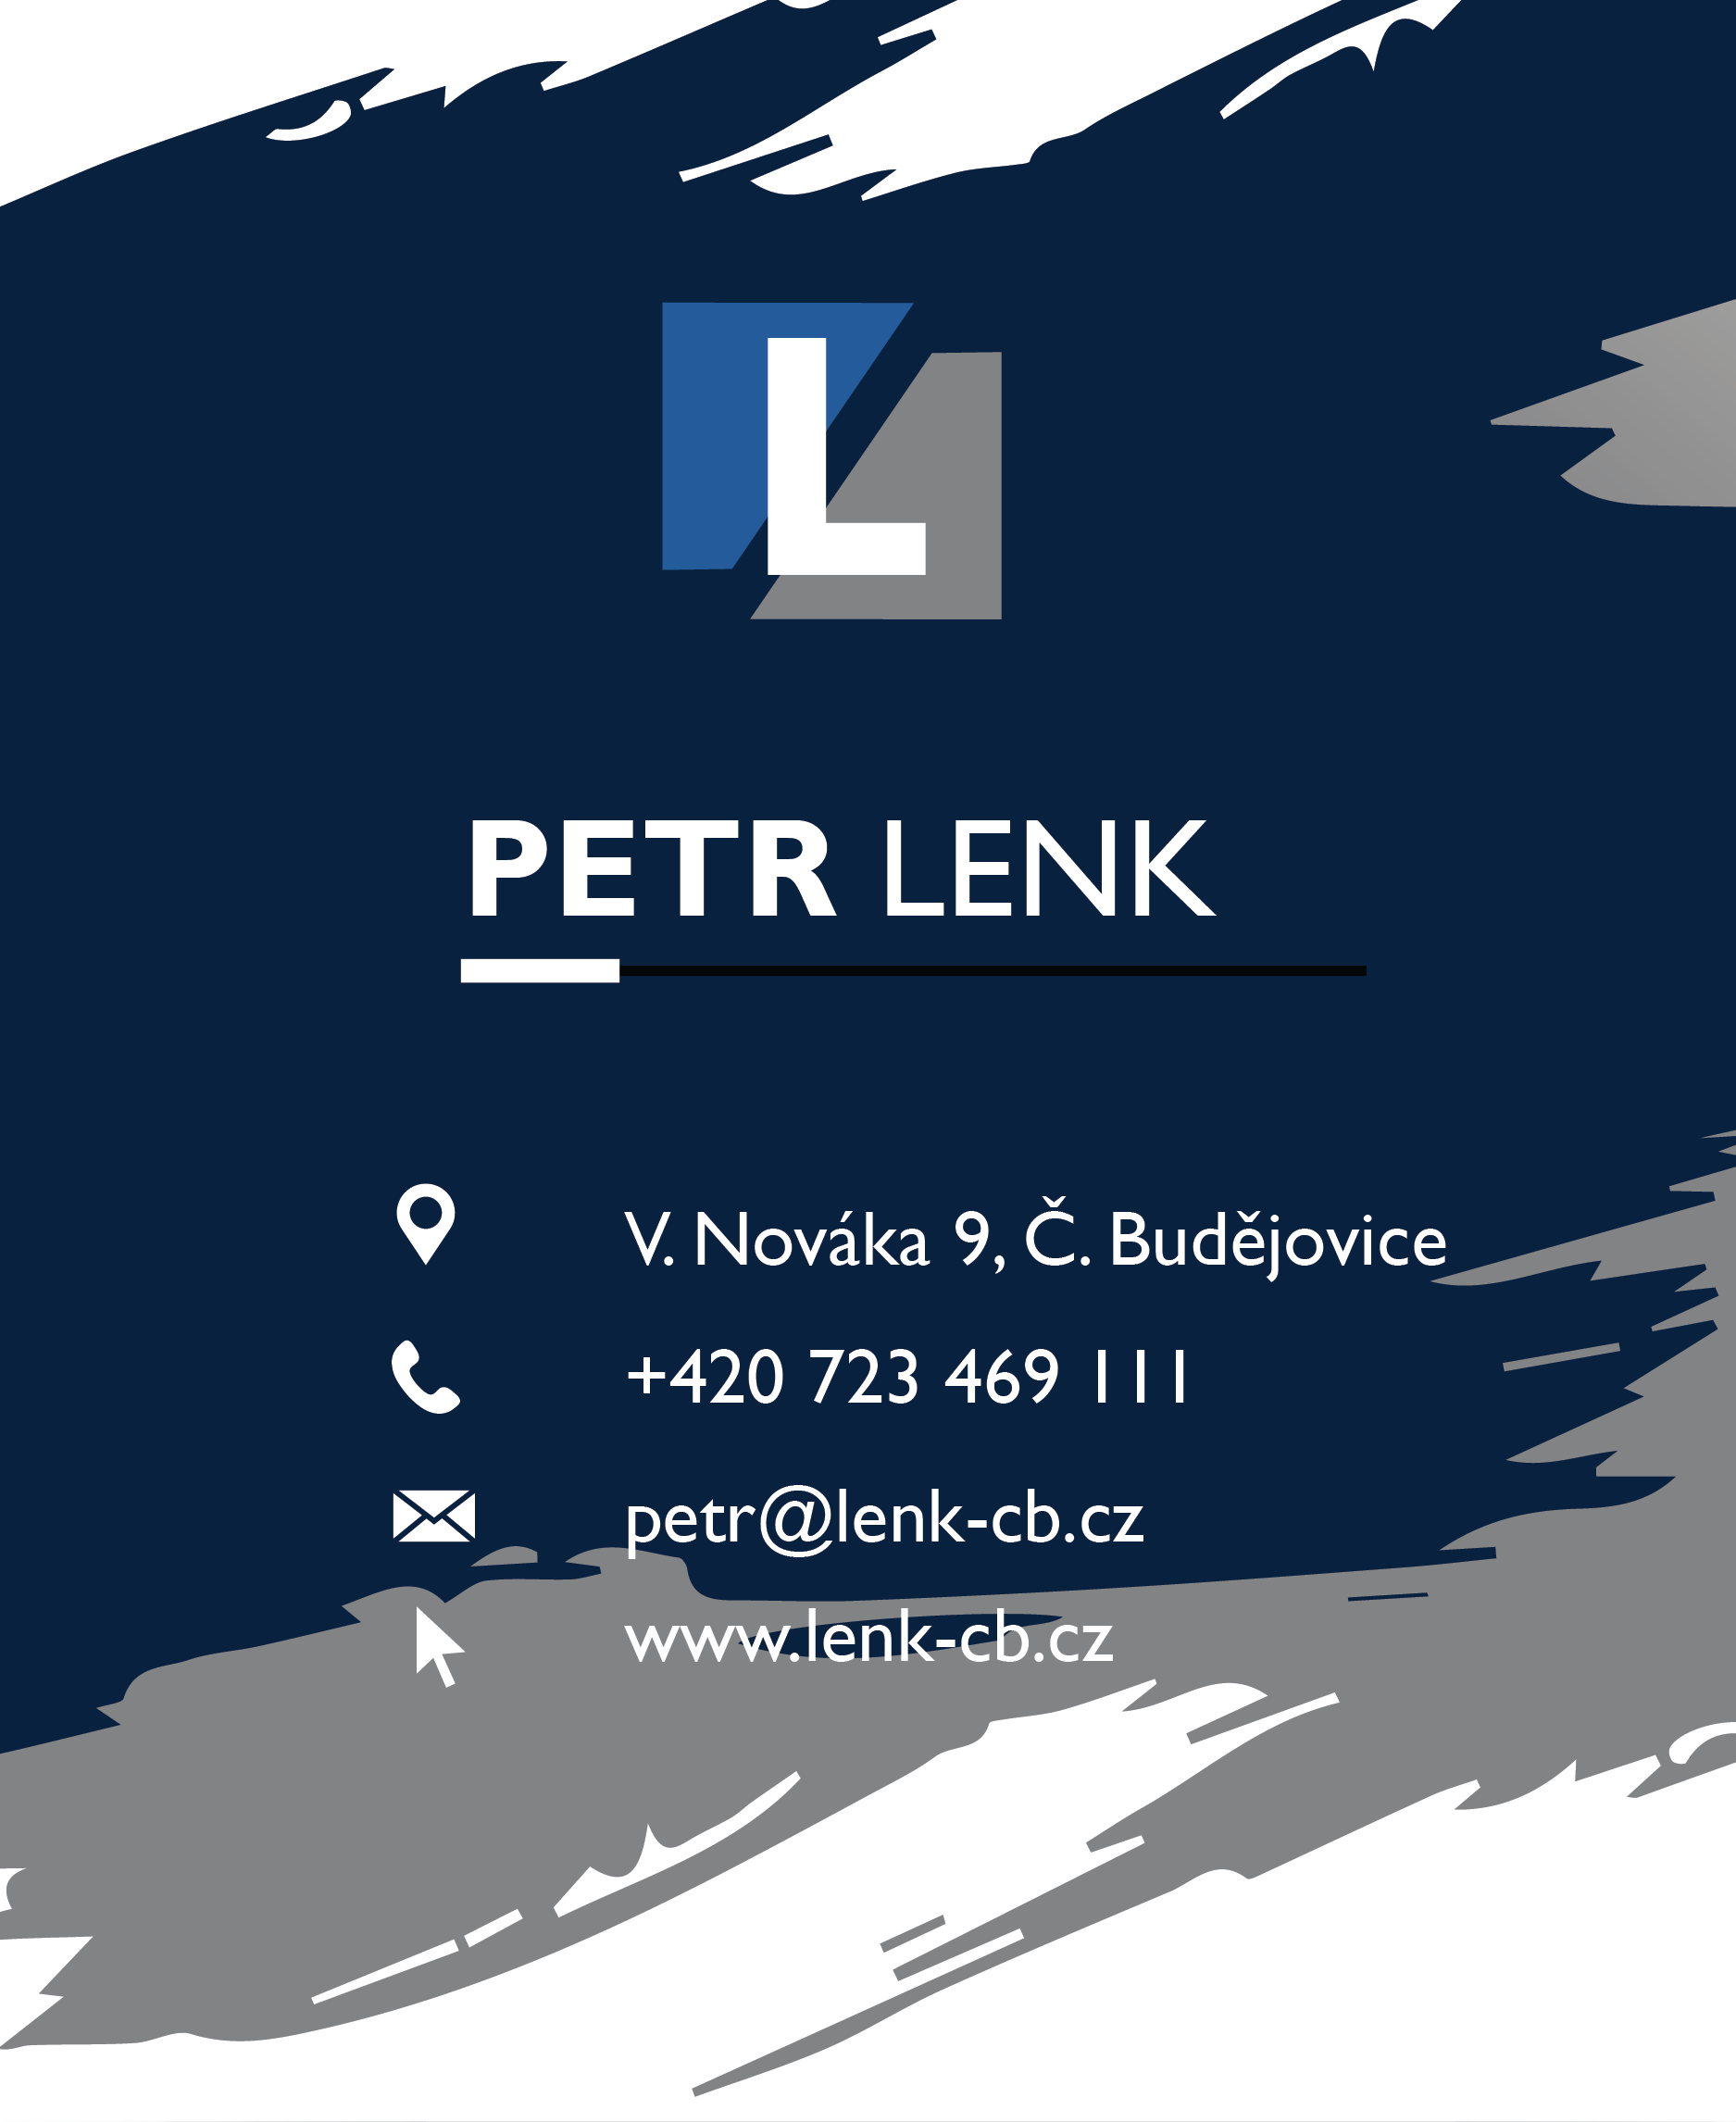 Petr Lenk